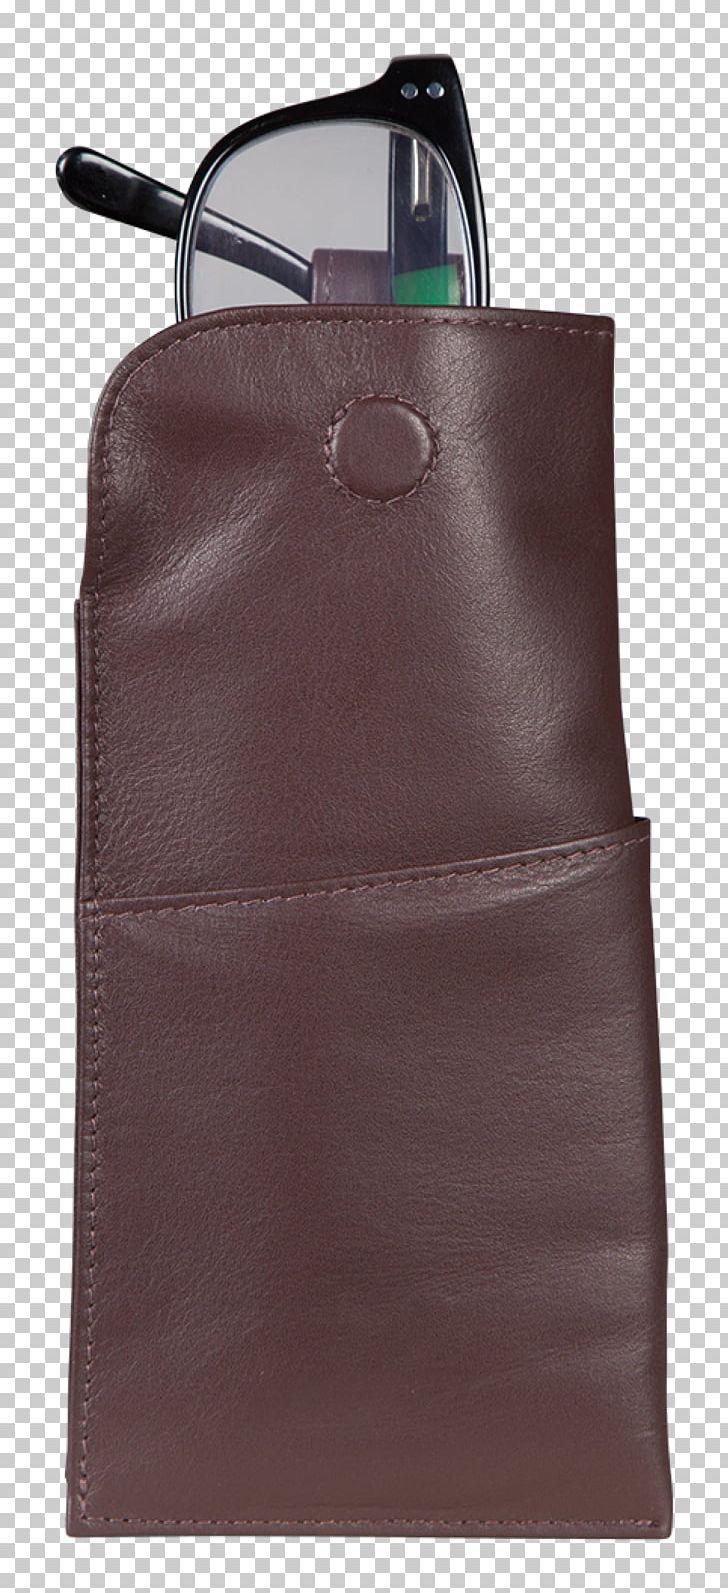 Handbag Leather Messenger Bags PNG, Clipart, Bag, Baggage, Brown, Glasses Case, Handbag Free PNG Download